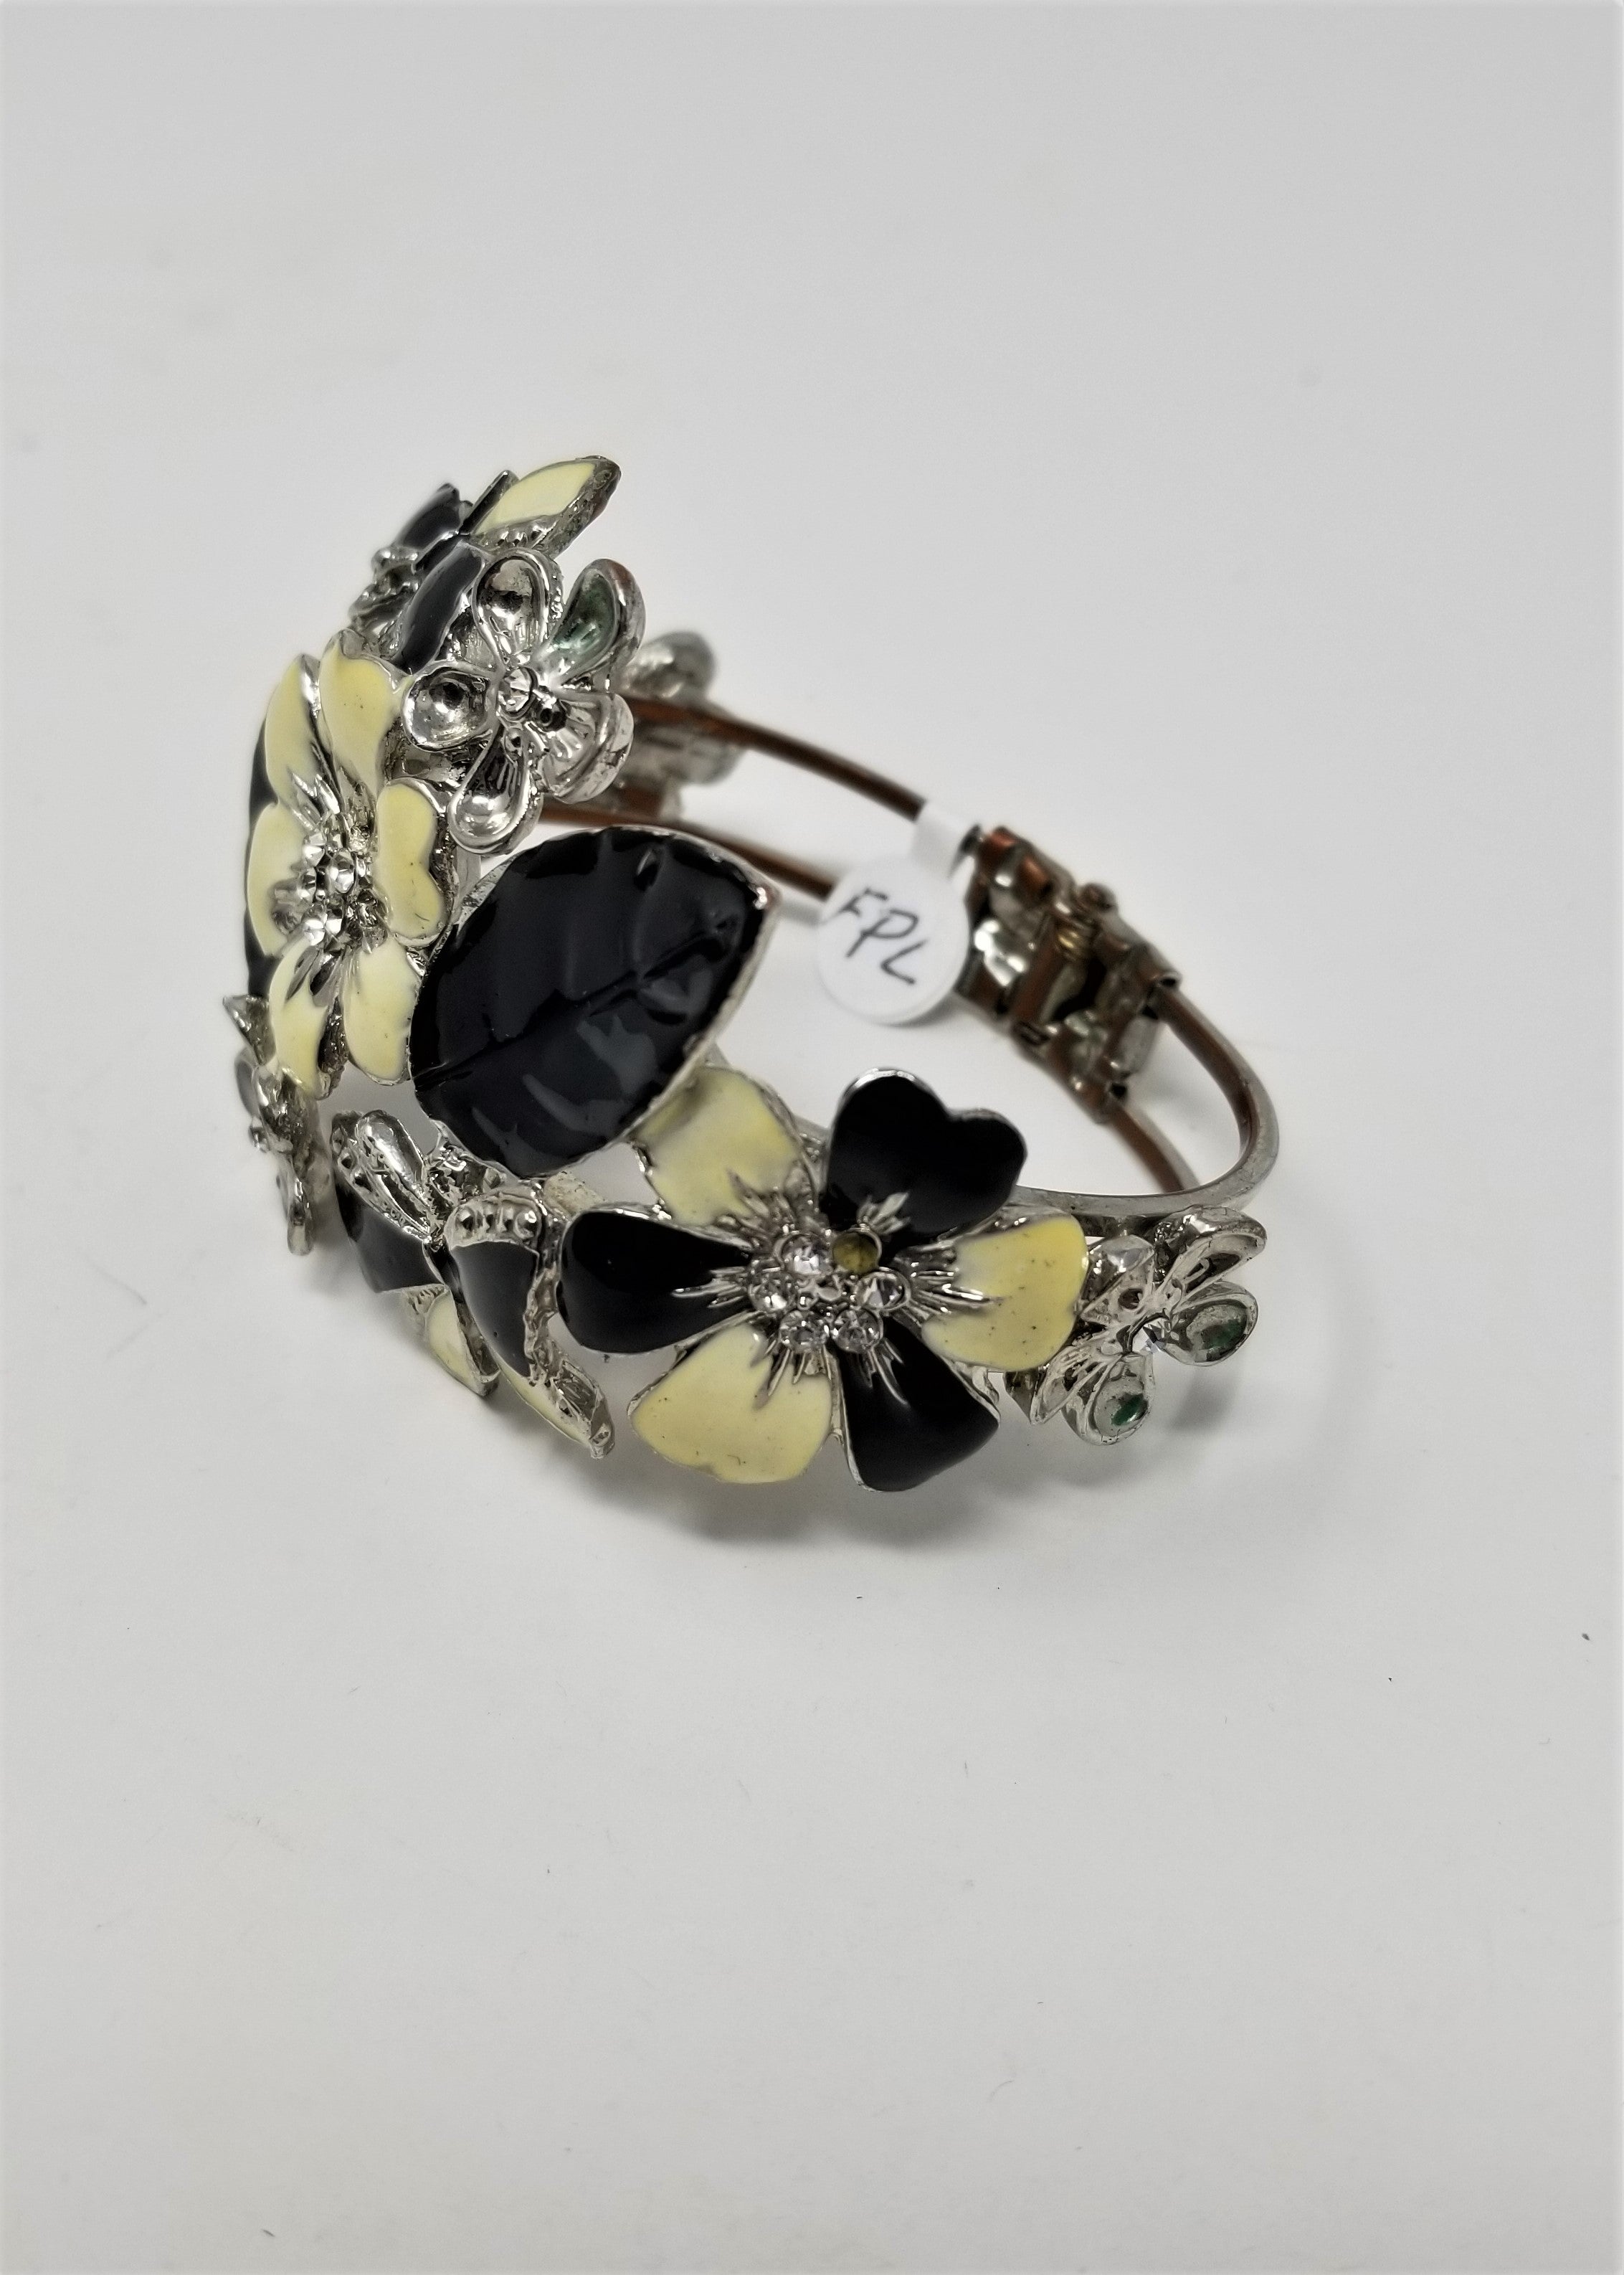 Large Vintage Flower and Butterfly Rhinestone Bangle Bracelet Enameled